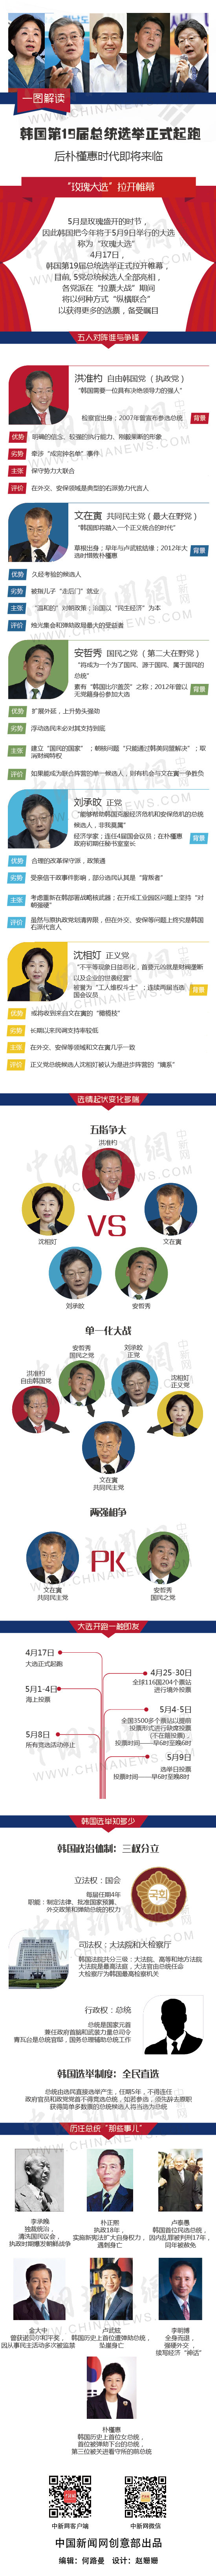 图说：韩国第19届总统大选2017年4月17日正式起跑。(制图：<a target='_blank' href='http://www.chinanews.com/' ><p  align=